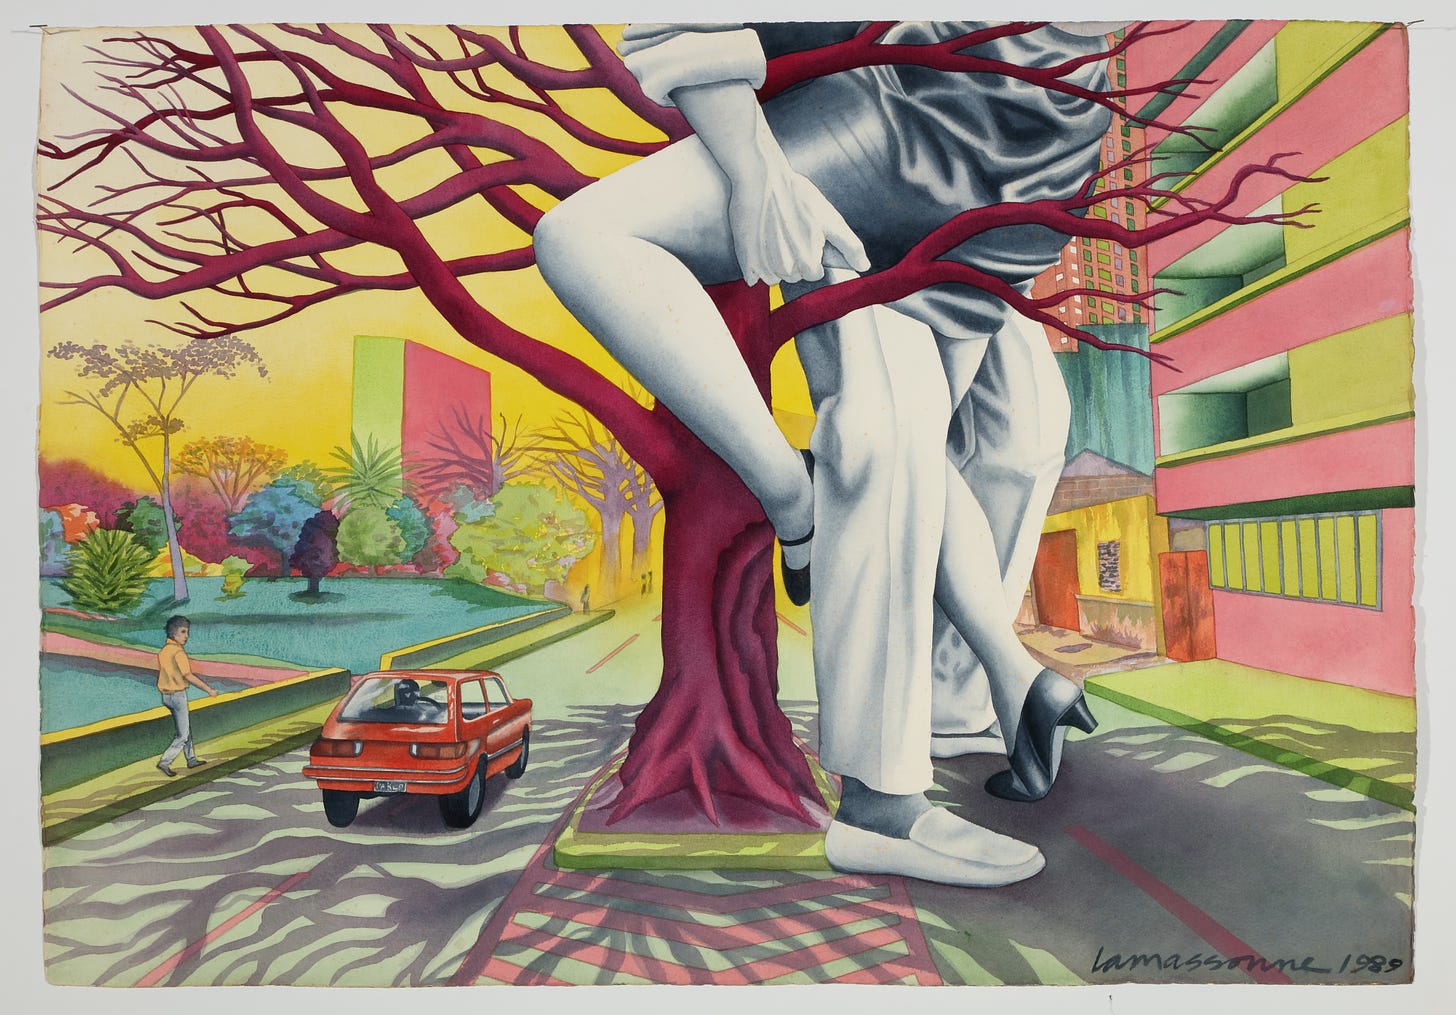 Descrição da imagem: Rua com carro vermelho em trânsito, rapaz na calçada olhando para casal em árvore roxa. Na pintura, casal se pegando da cintura para baixo. Ele de calça e mocassim brancos, ela de saia curta cinza e sapatos pretos. Prédios residenciais amarelo e rosa ao lado